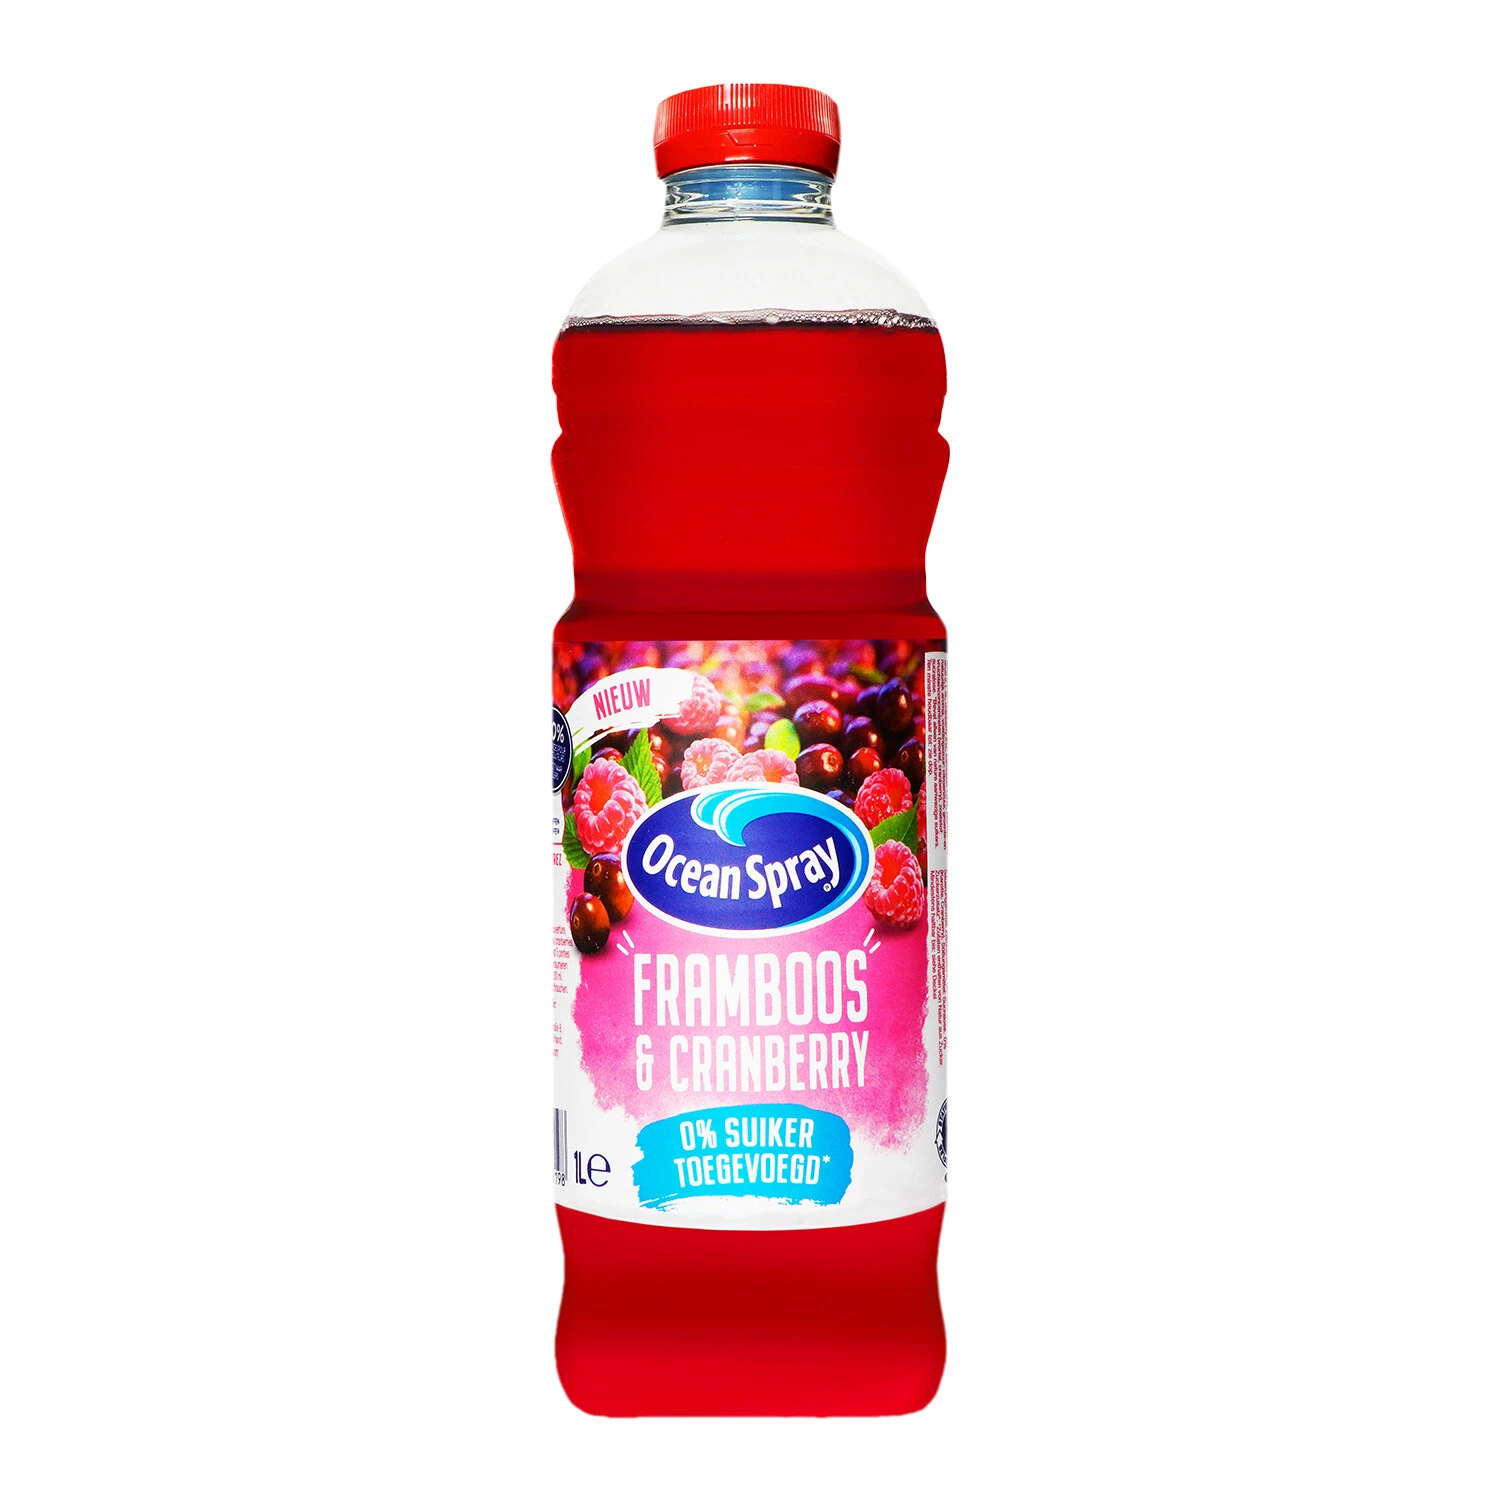 蔓越莓覆盆子汁 1l - Ocean Spray